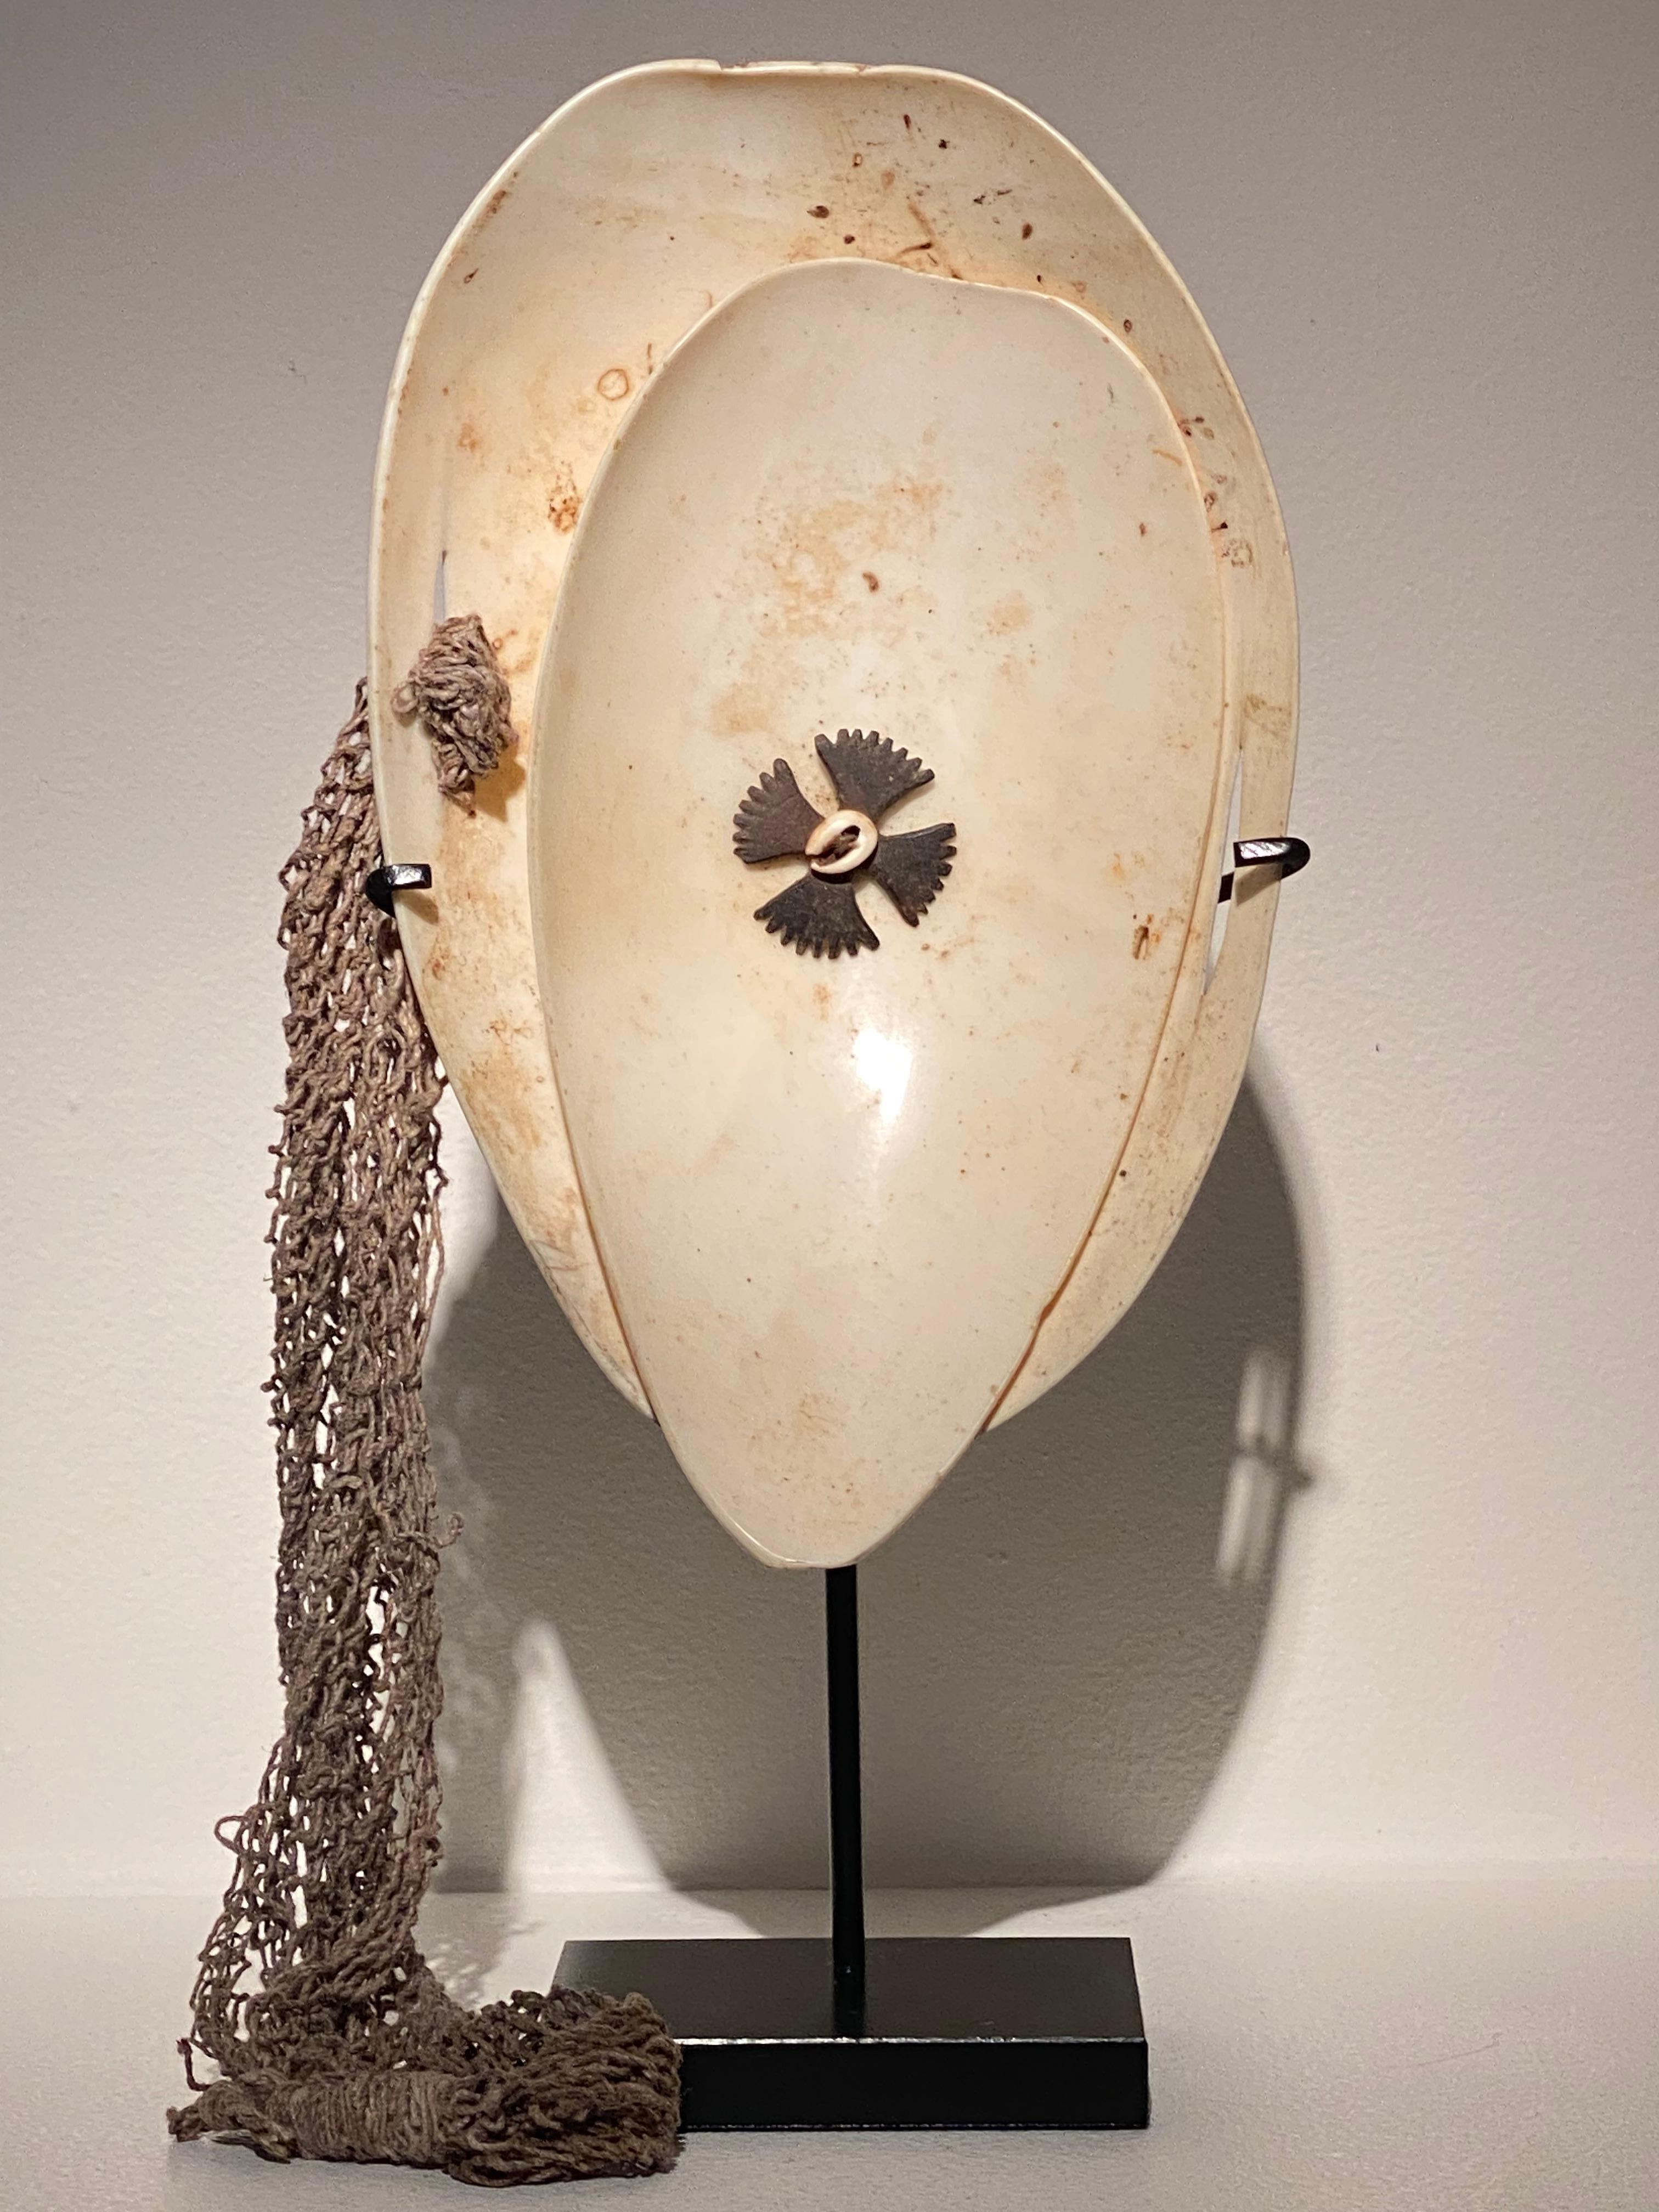 Exceptionnel objet tribal de Papouasie-Nouvelle-Guinée,
gravée à la main vers 1960,
fabriqués en coquillage et décorés de coquillages et de noix de coco, ainsi que de textiles tissés,
cet objet est spécial car il est fait d'une double composition